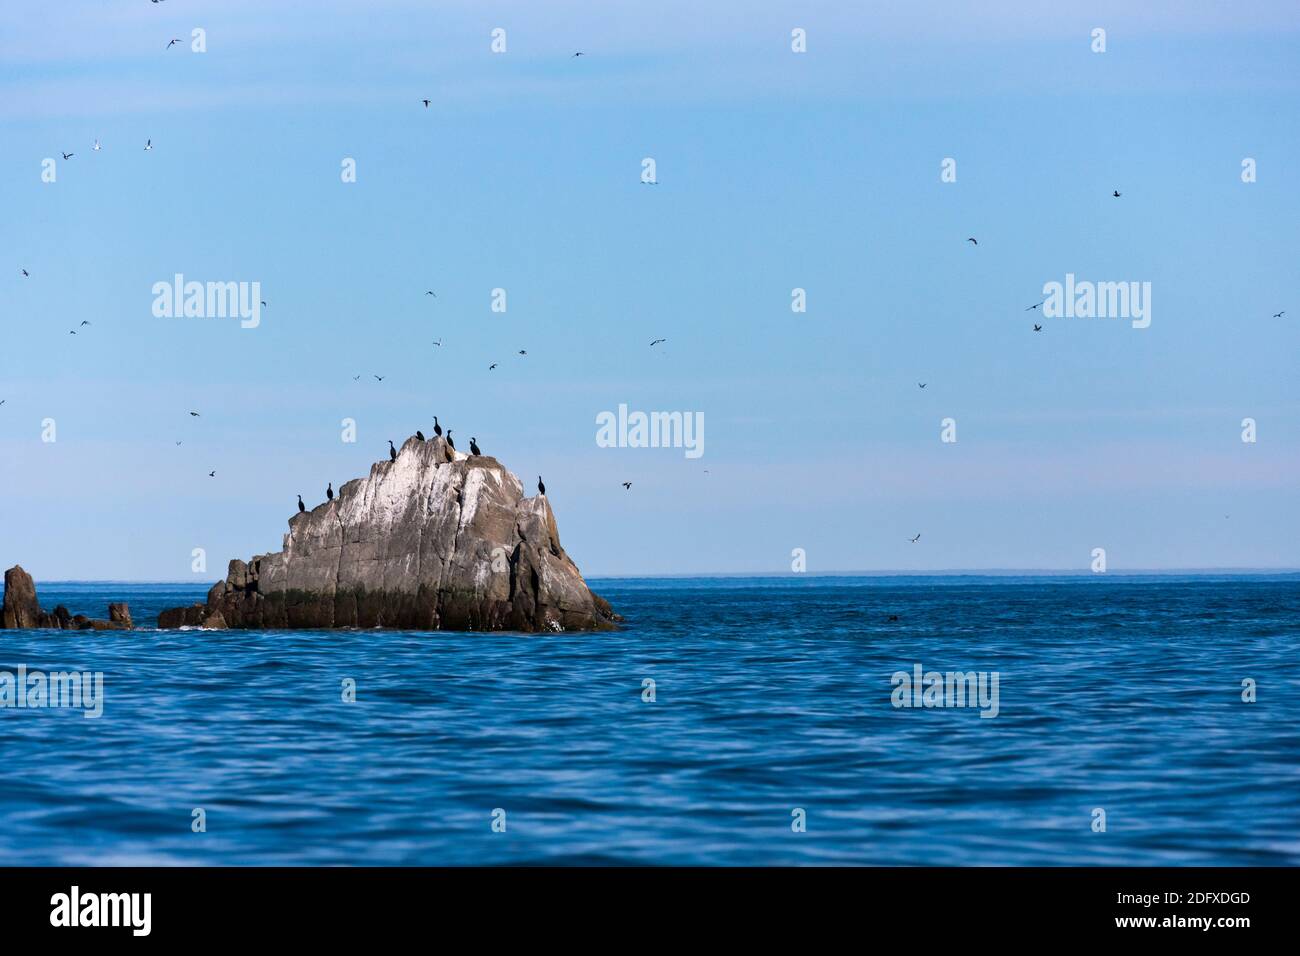 Les cormorans sauvages sur le rocher, Nuneangan, île de la mer de Béring, Extrême-Orient russe Banque D'Images